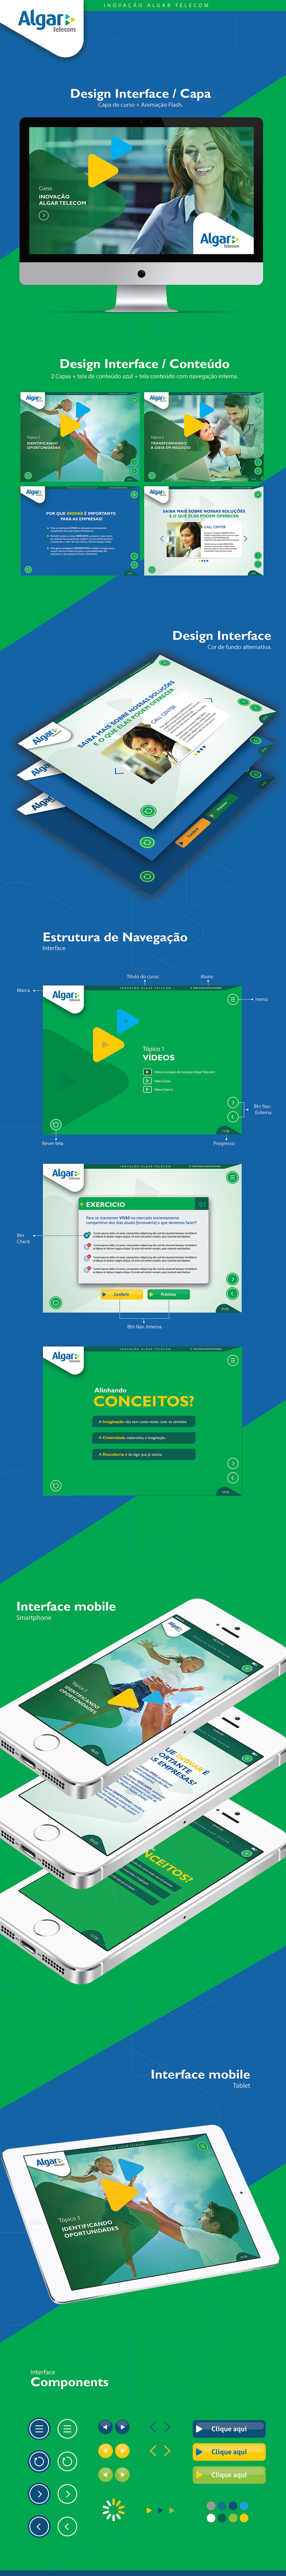 Algar e-learning design interface Diseño de interacción design de interação mobile design Paulo Devia